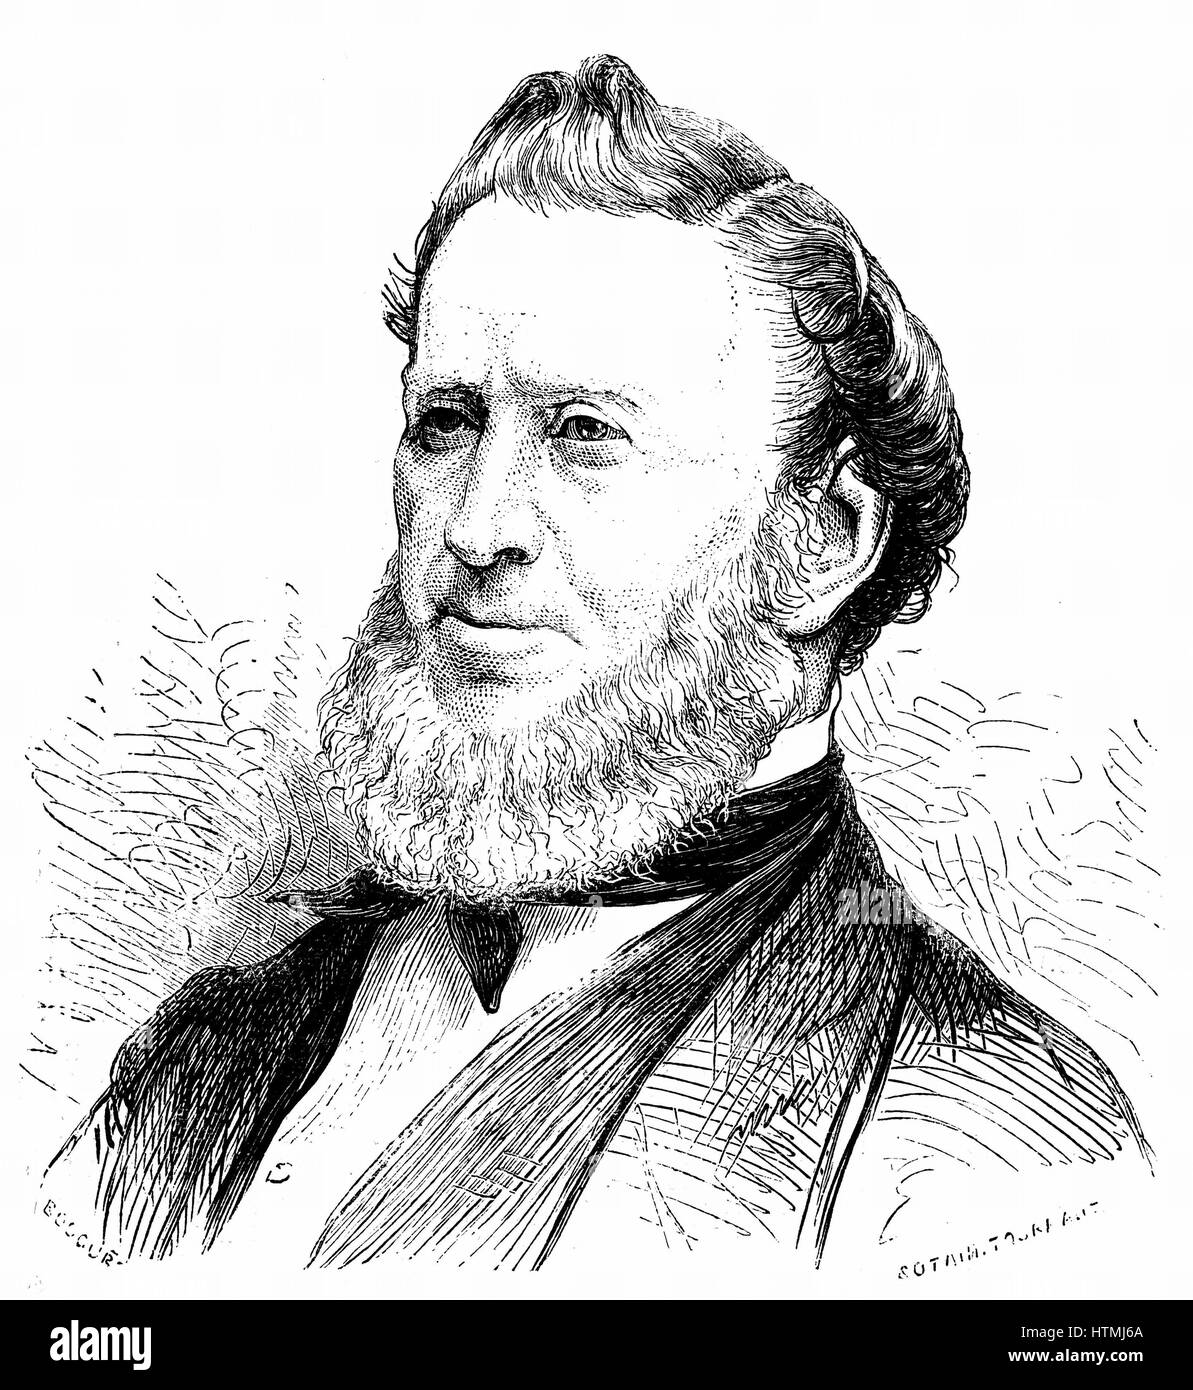 Brigham Young (1801-77)-amerikanischer Mormone-Führer. Gründer von Salt Lake City. Starb an Cholera Morbus. Holzstich, Paris 1877. Stockfoto